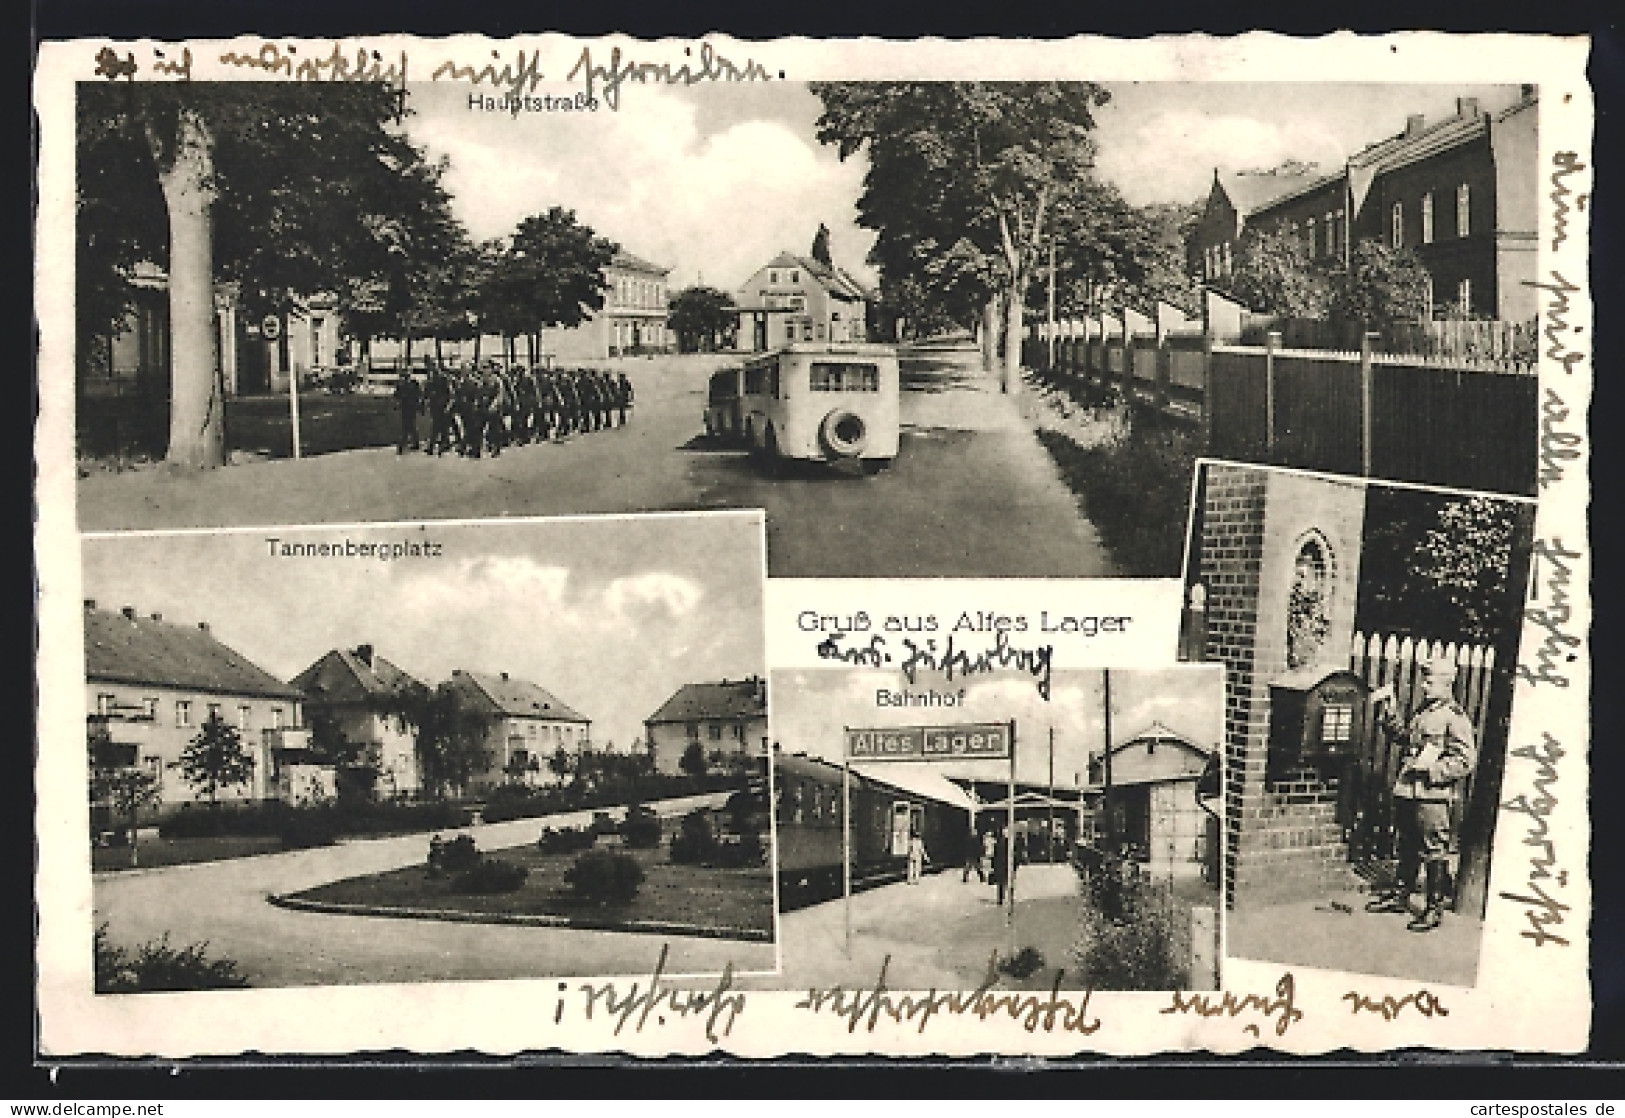 AK Jüterbog, Altes Lager, Hauptstrasse, Tannebergplatz, Bahnhof  - Jueterbog